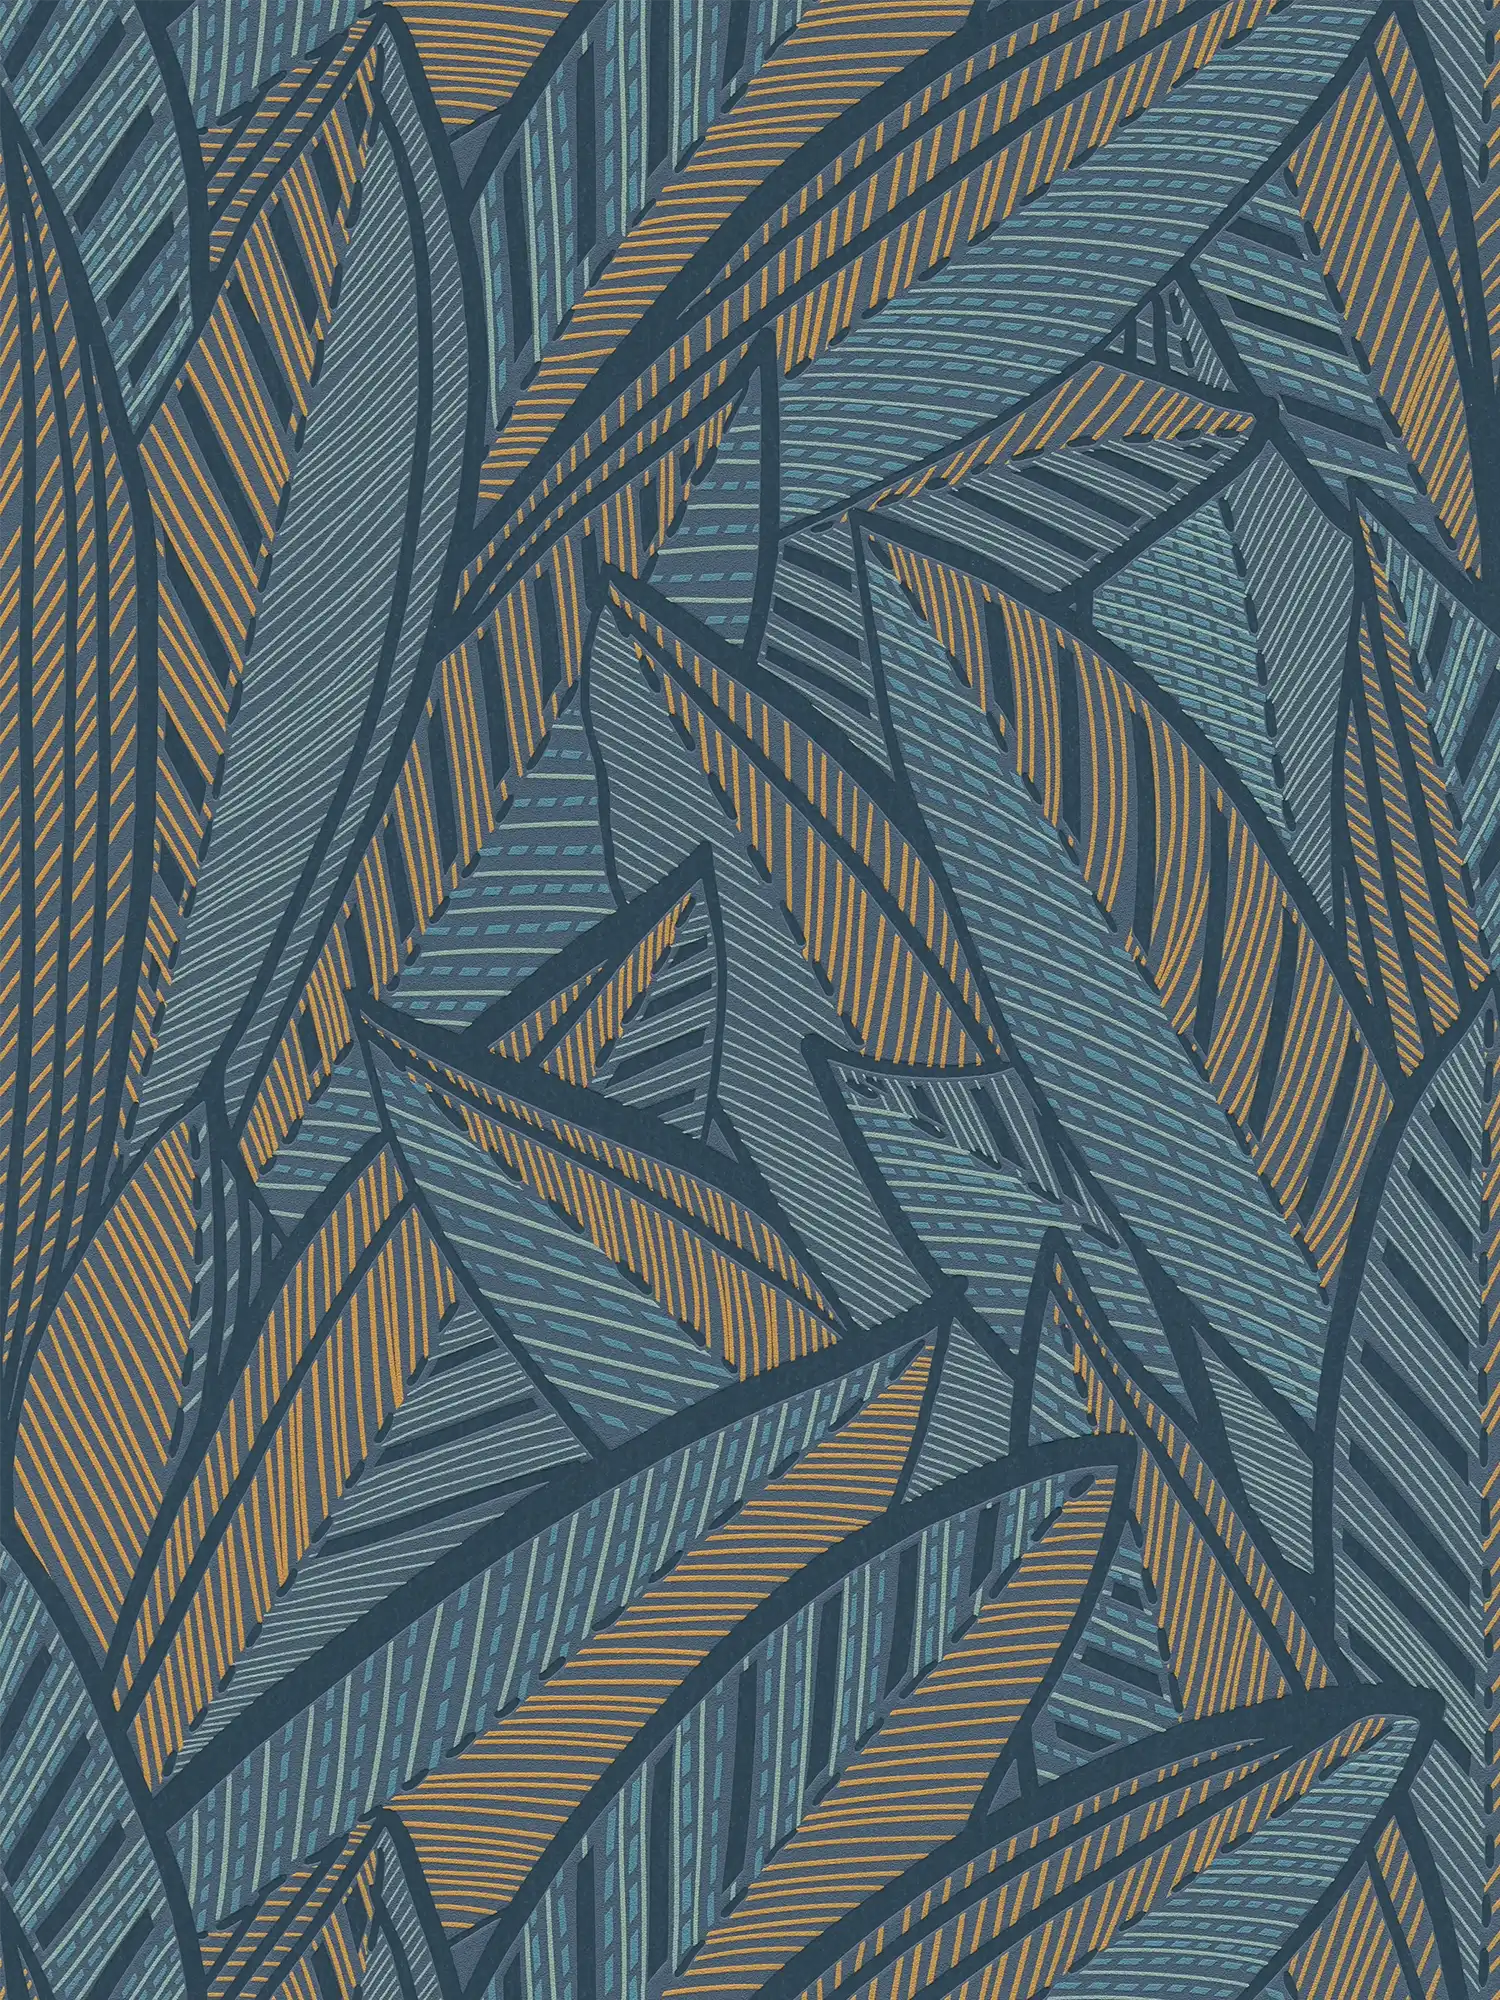 Vliesbehang met palmbladeren, jungleachtig en glanzende accenten - blauw, groen, geel
